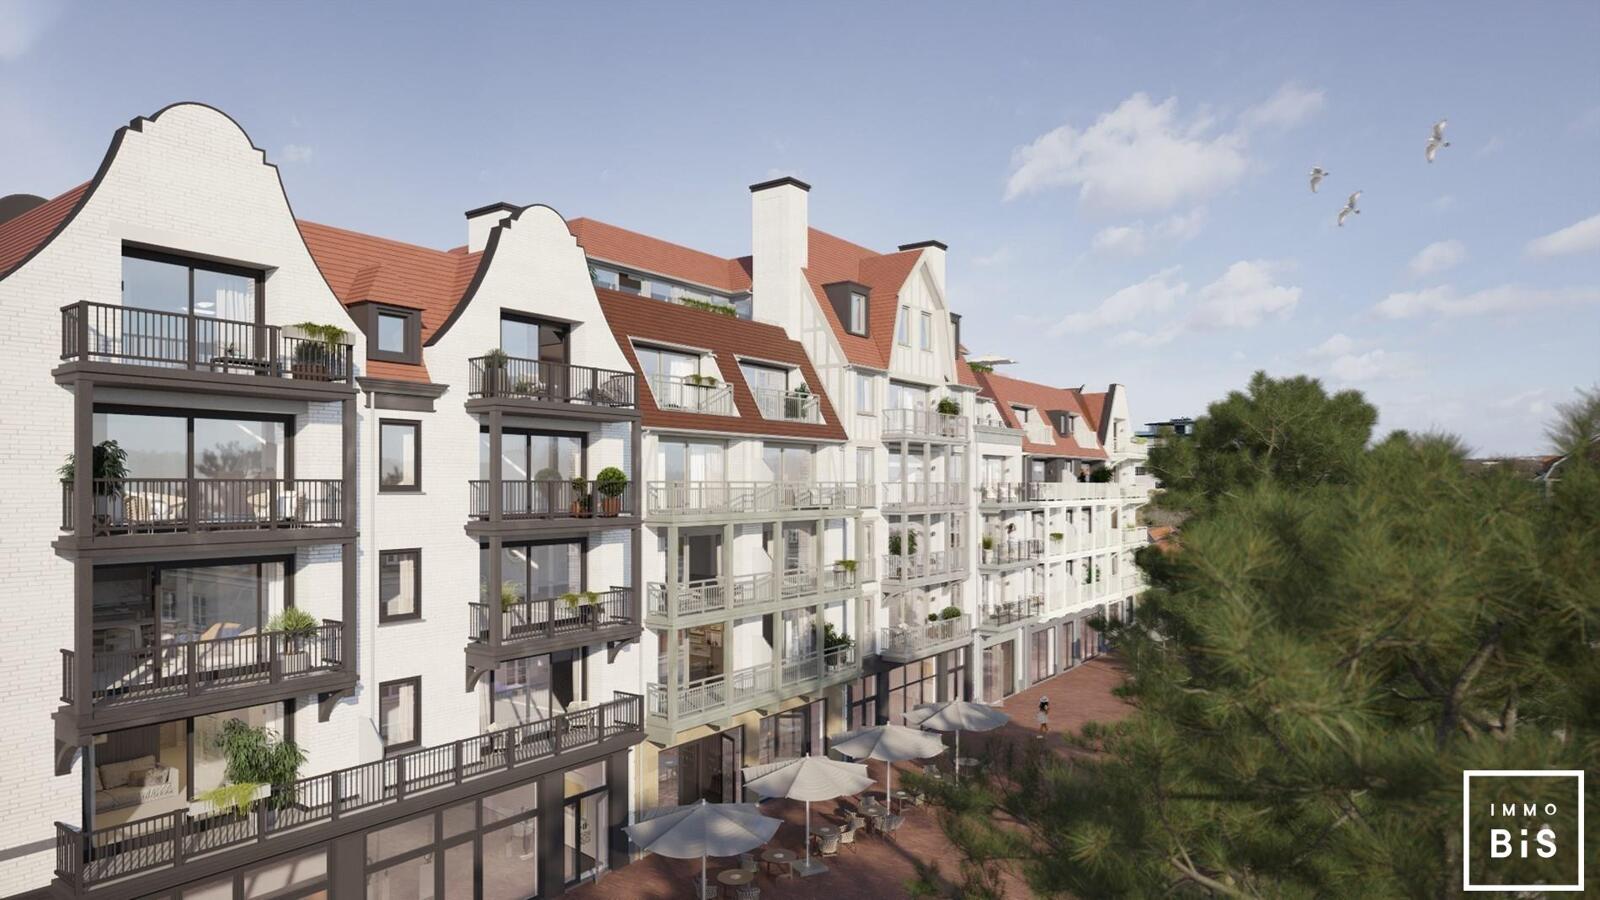 " Appartement villa moderne avec terrasse sur la Digue à Cadzand - Résidence Duinhof-Noord " 7